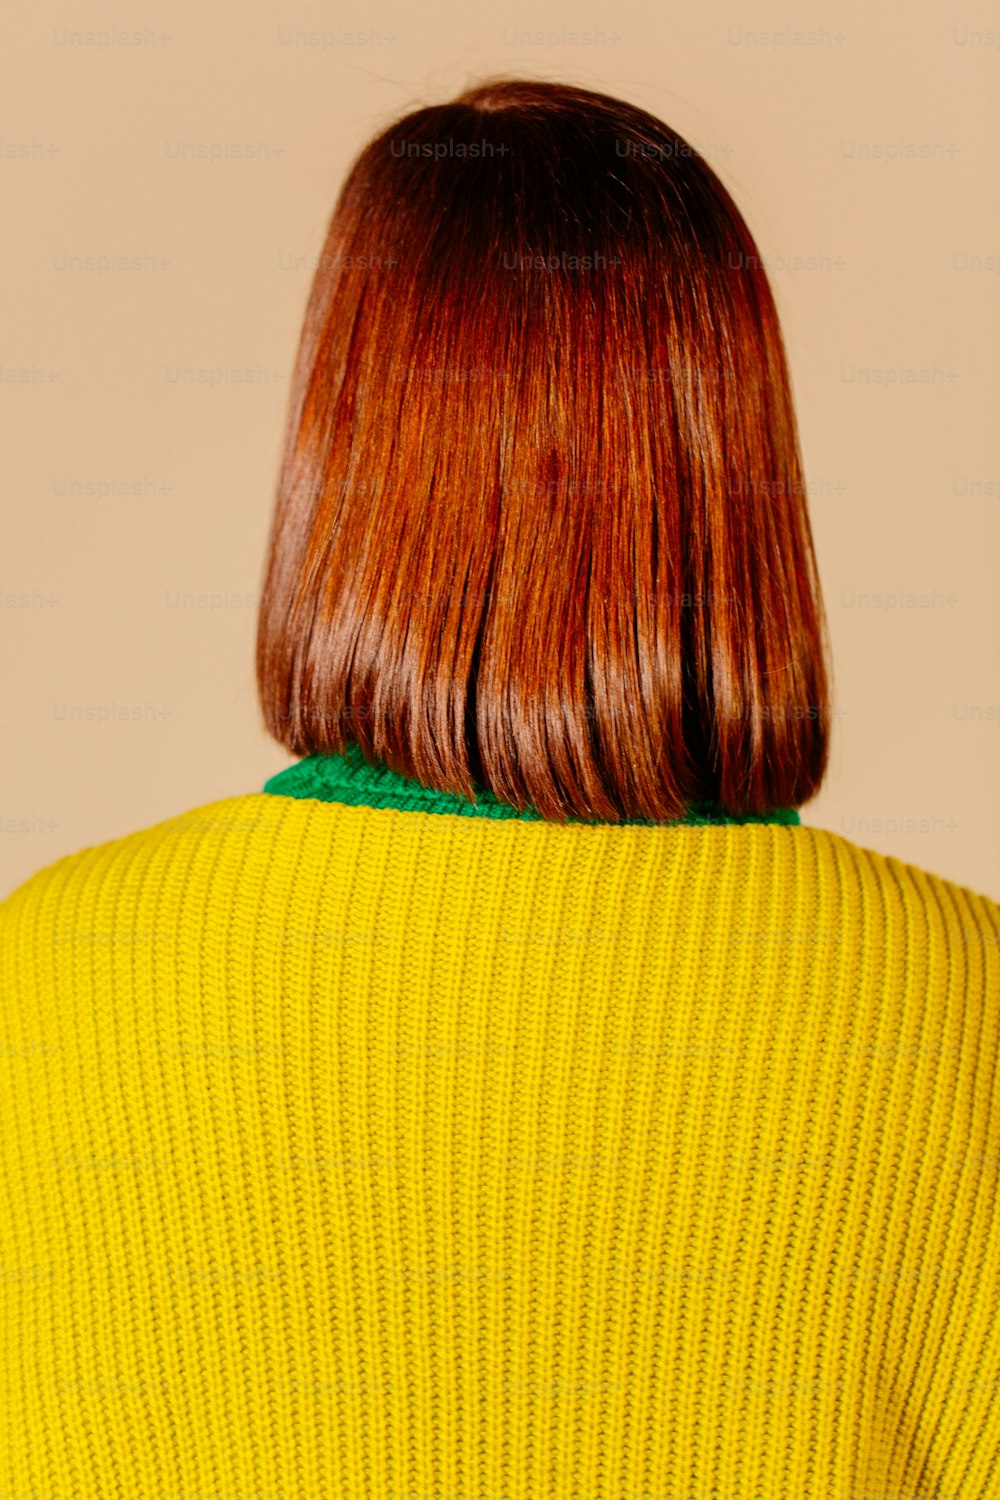 Eine Frau mit roten Haaren in einem gelben Pullover